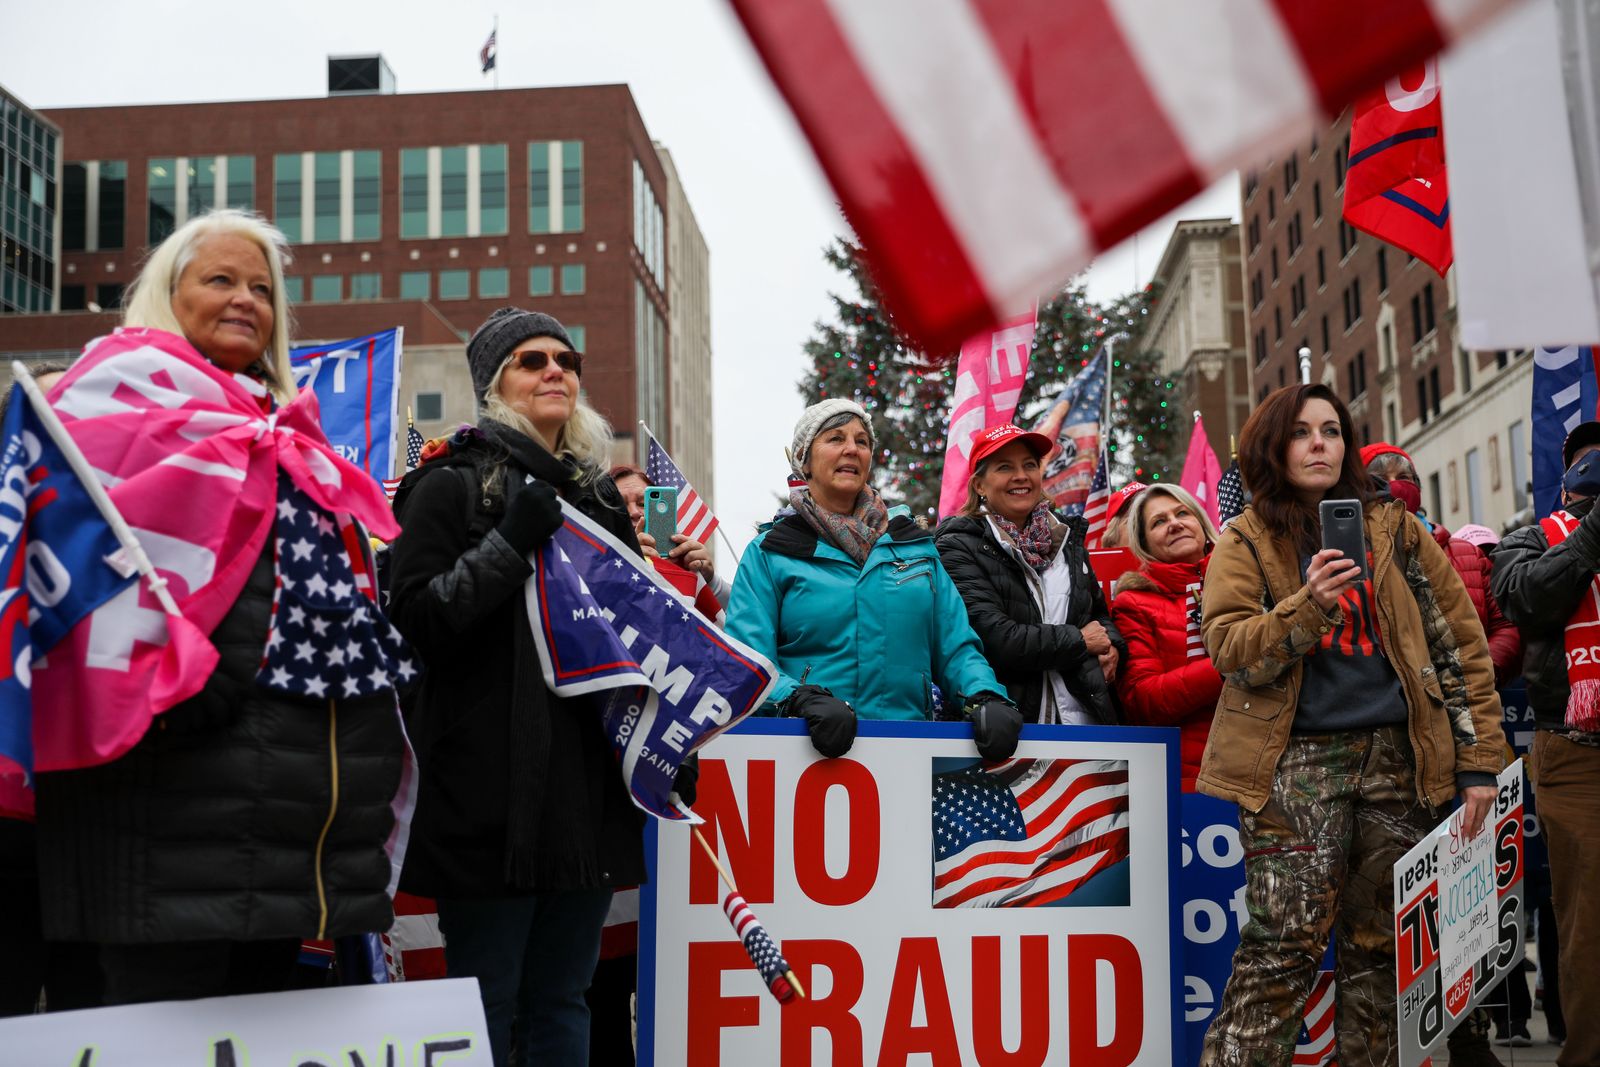 مؤيّدون للرئيس الأميركي دونالد ترمب يتظاهرون في ولاية ميشيغان احتجاجاً على نتائج الانتخابات - 8 ديسمبر 2020  - REUTERS